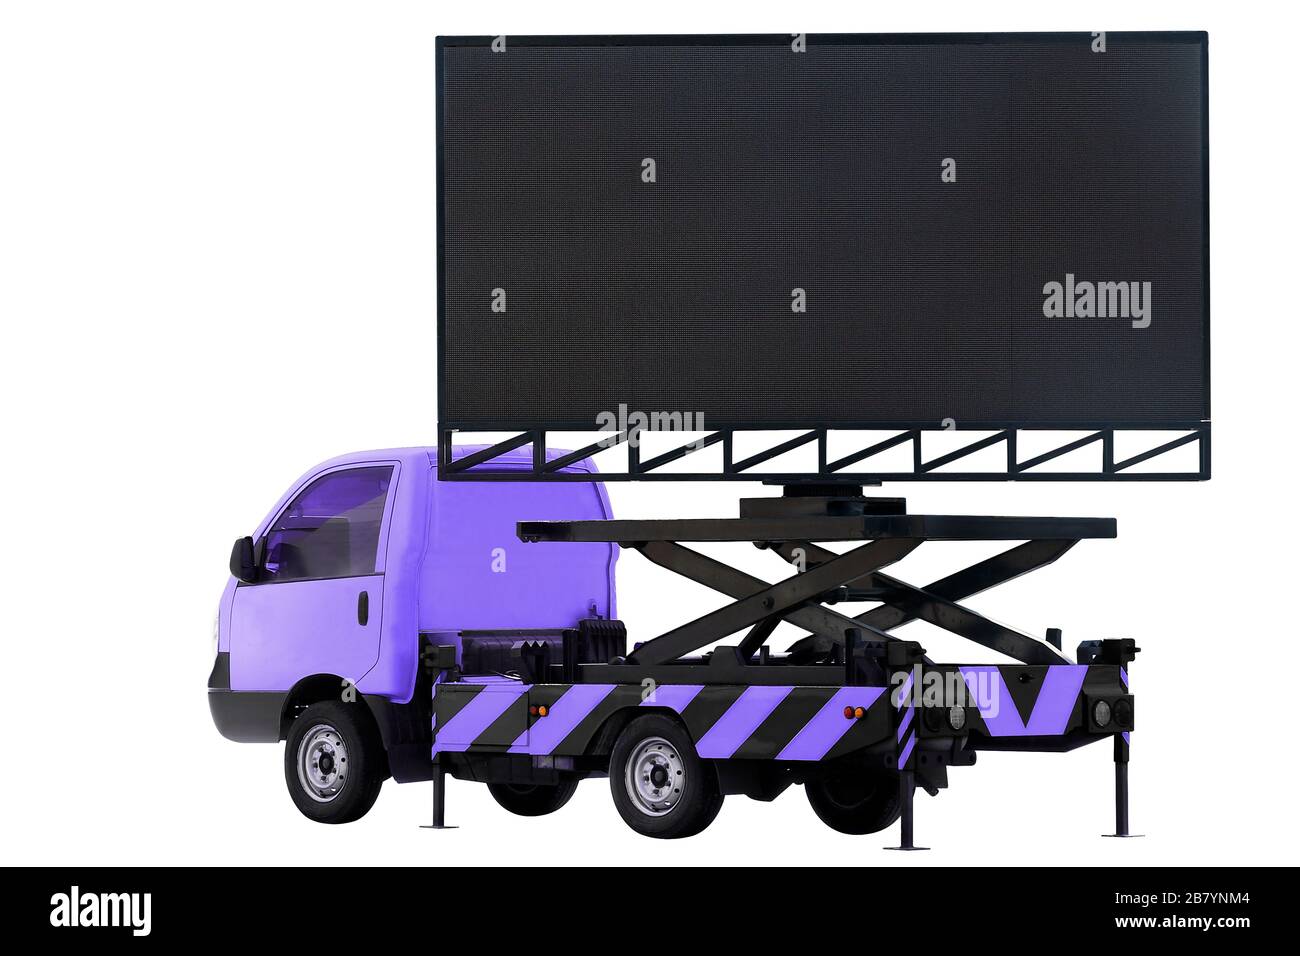 Affissioni su auto colore viola pannello LED per segnaletica Pubblicità isolato su sfondo bianco Foto Stock